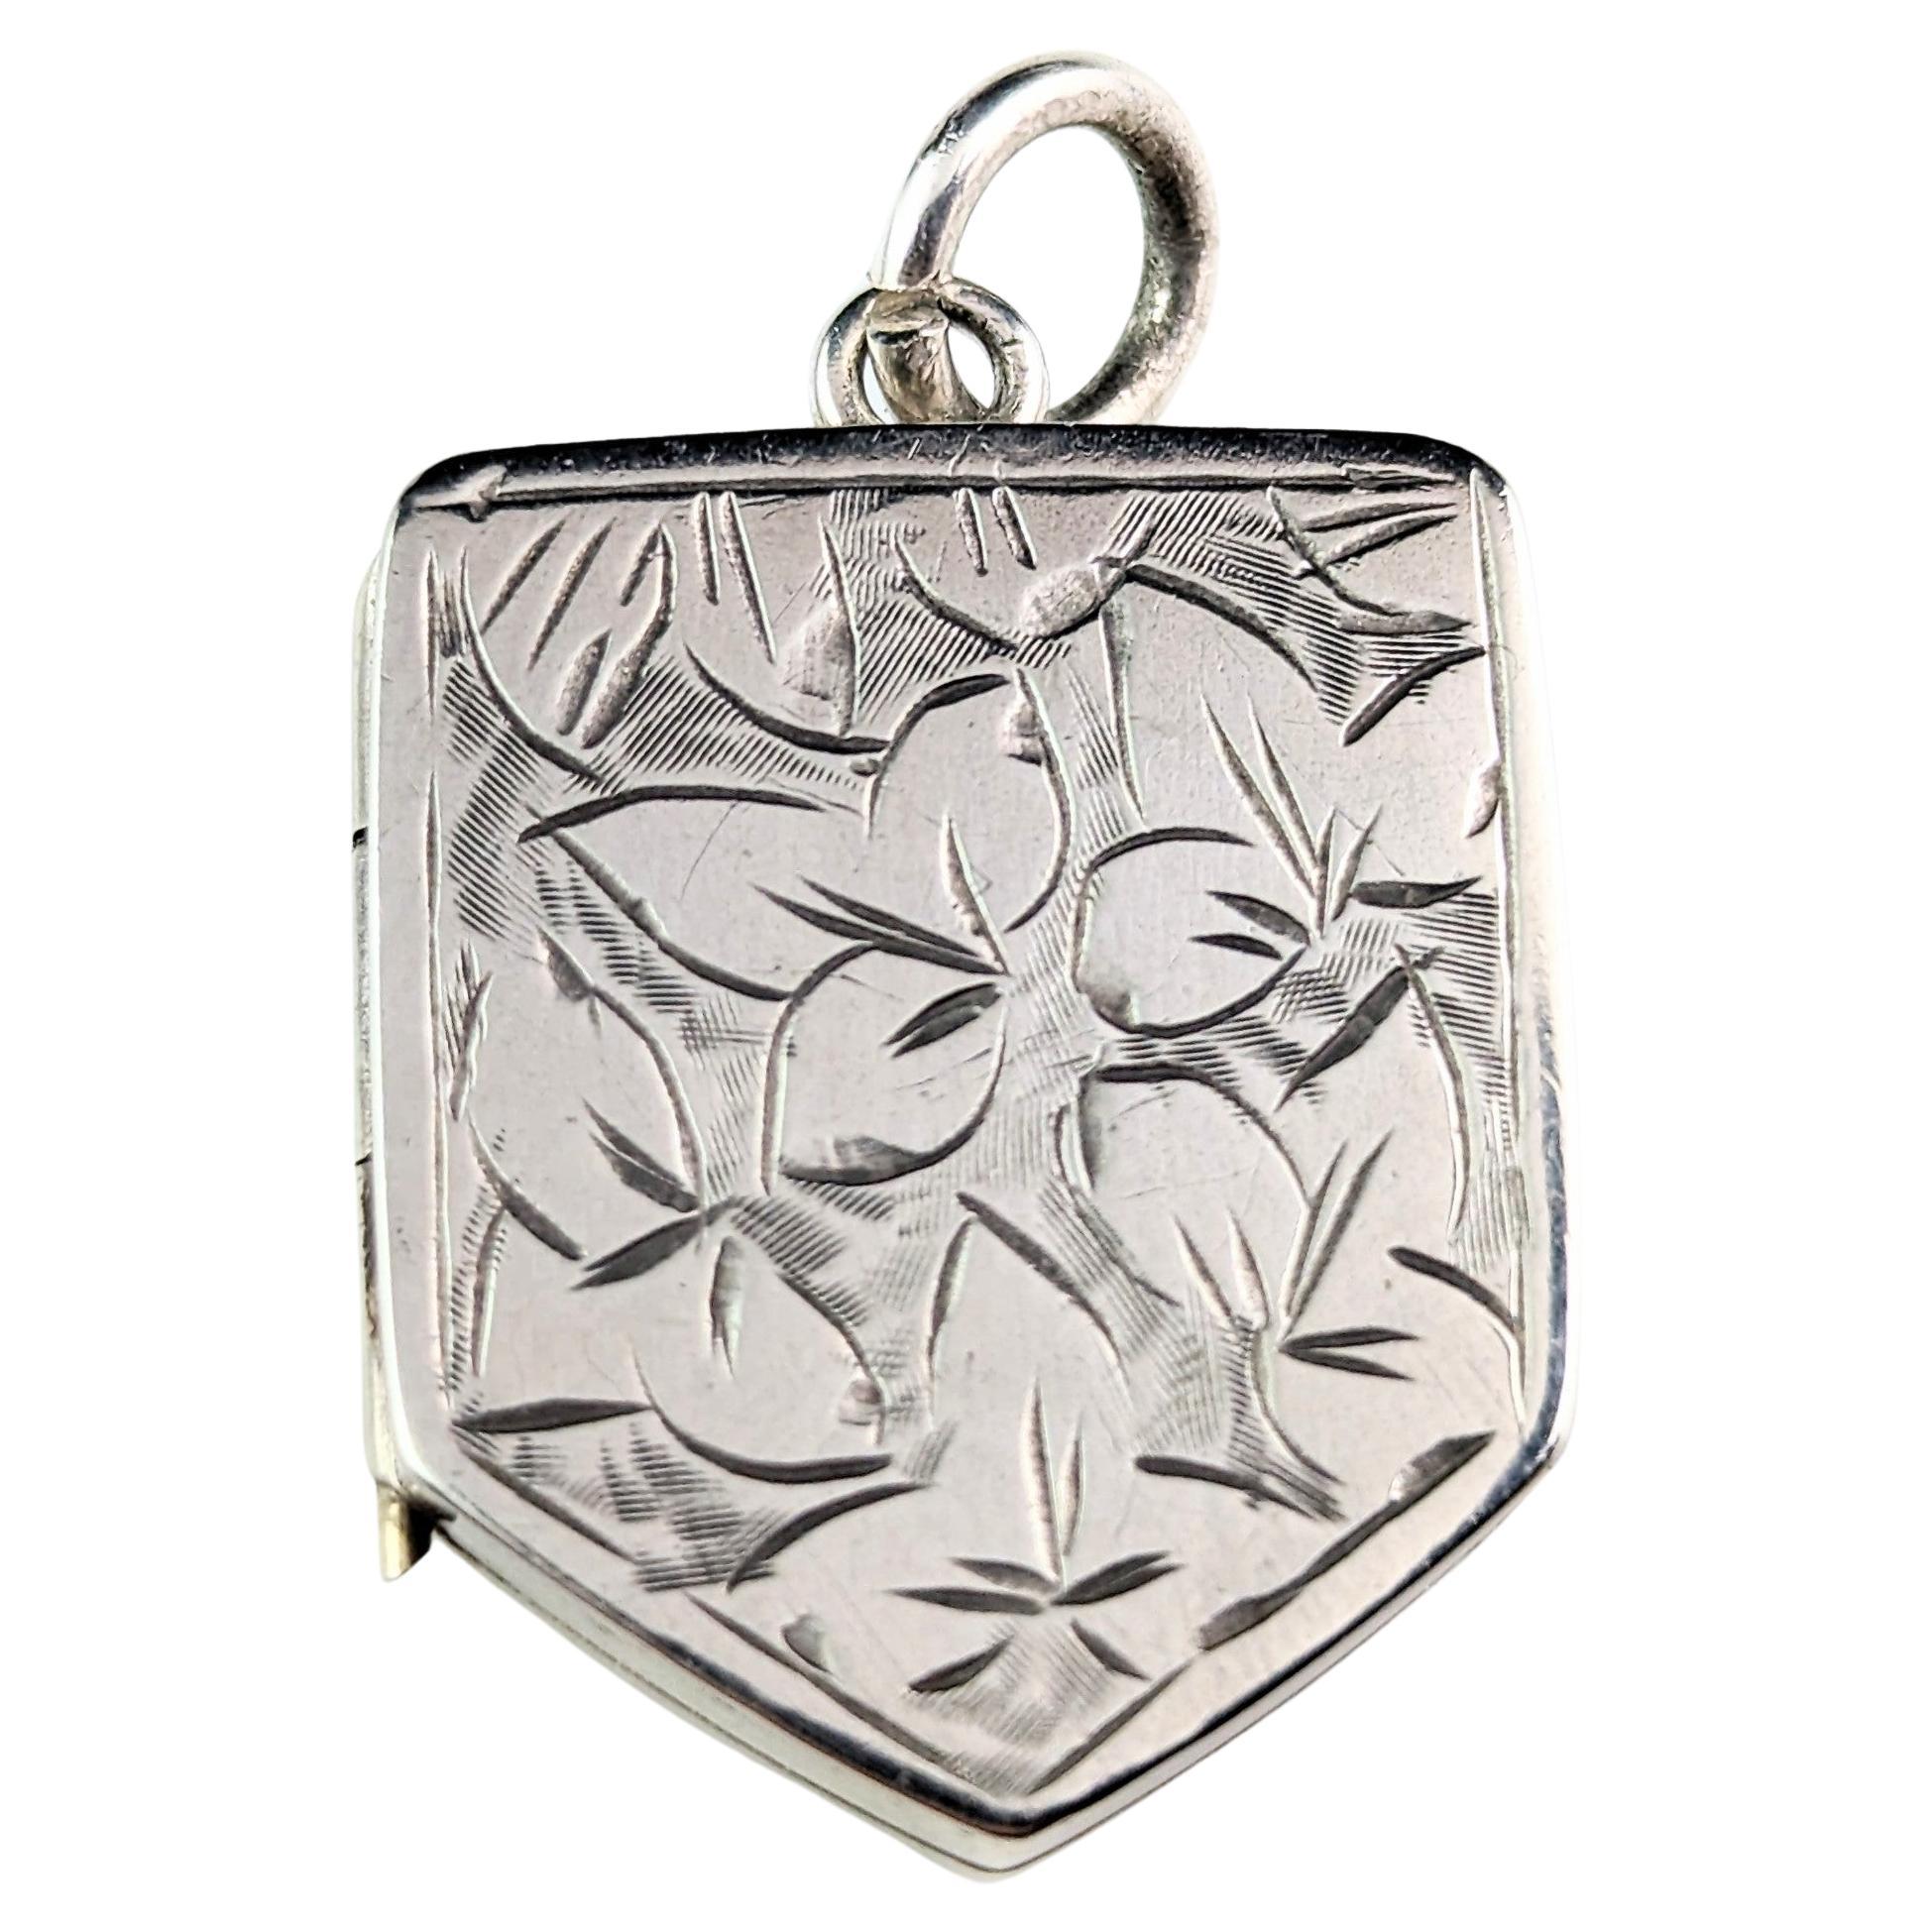 Antique Silver Locket Pendant, Leaf Engraved, Shield Shaped For Sale